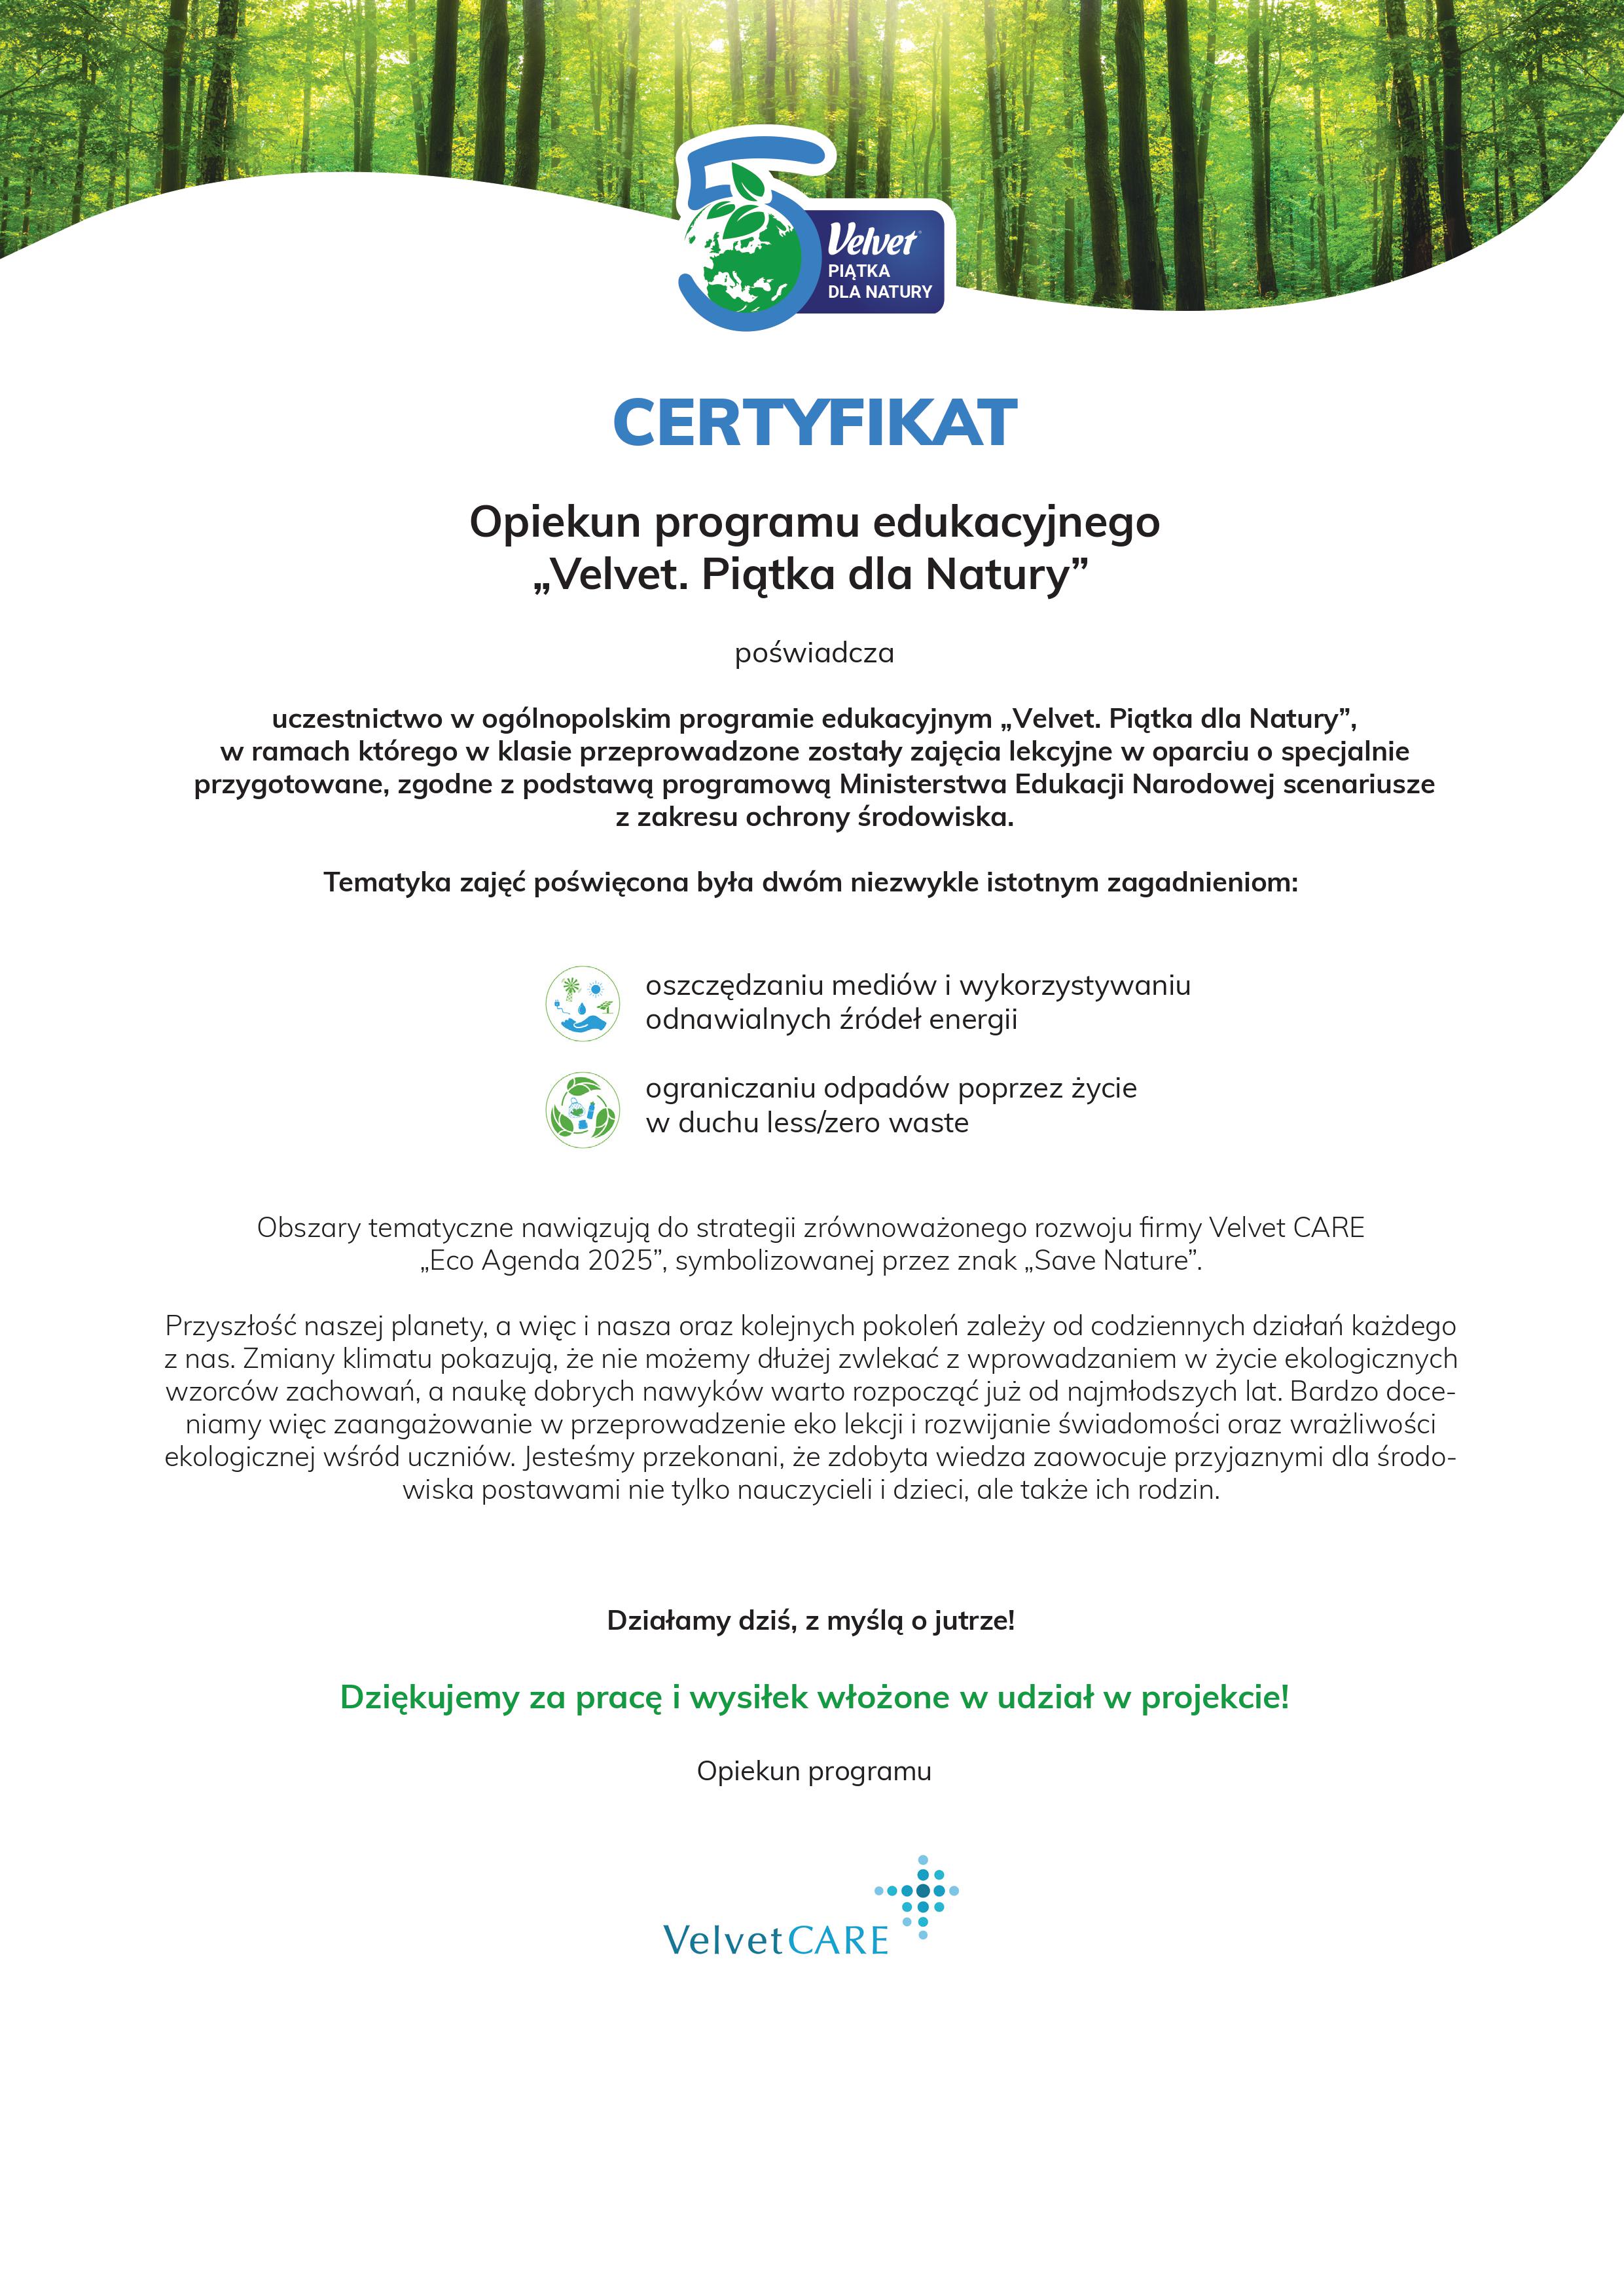 Certyfikat uczestnictwa w programie edukacyjnym Velvet piątka dla natury